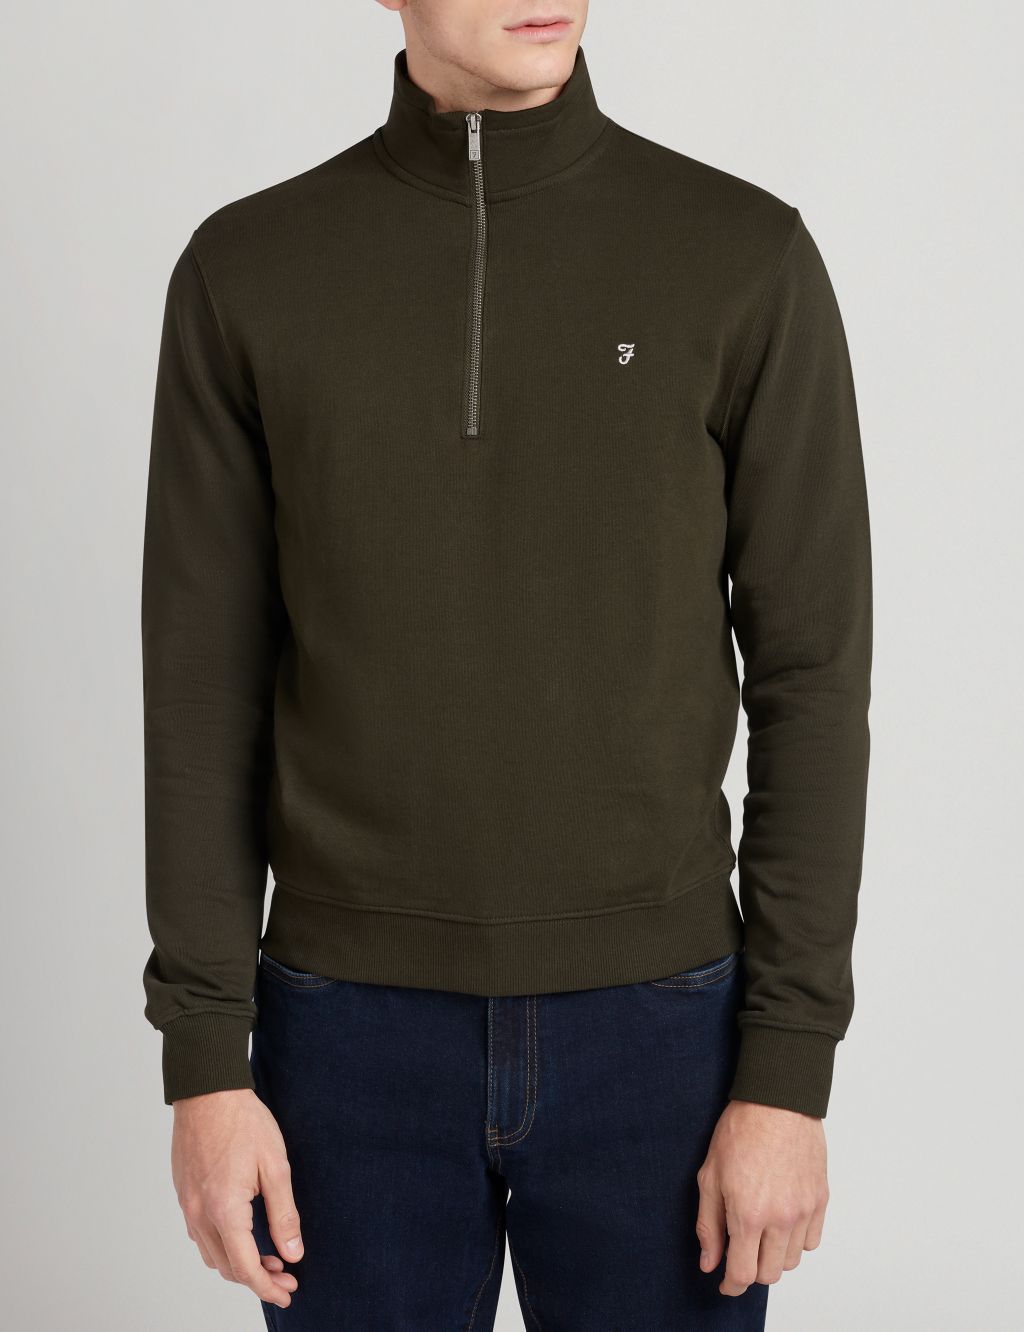 Men’s Green Hoodies & Sweatshirts | M&S